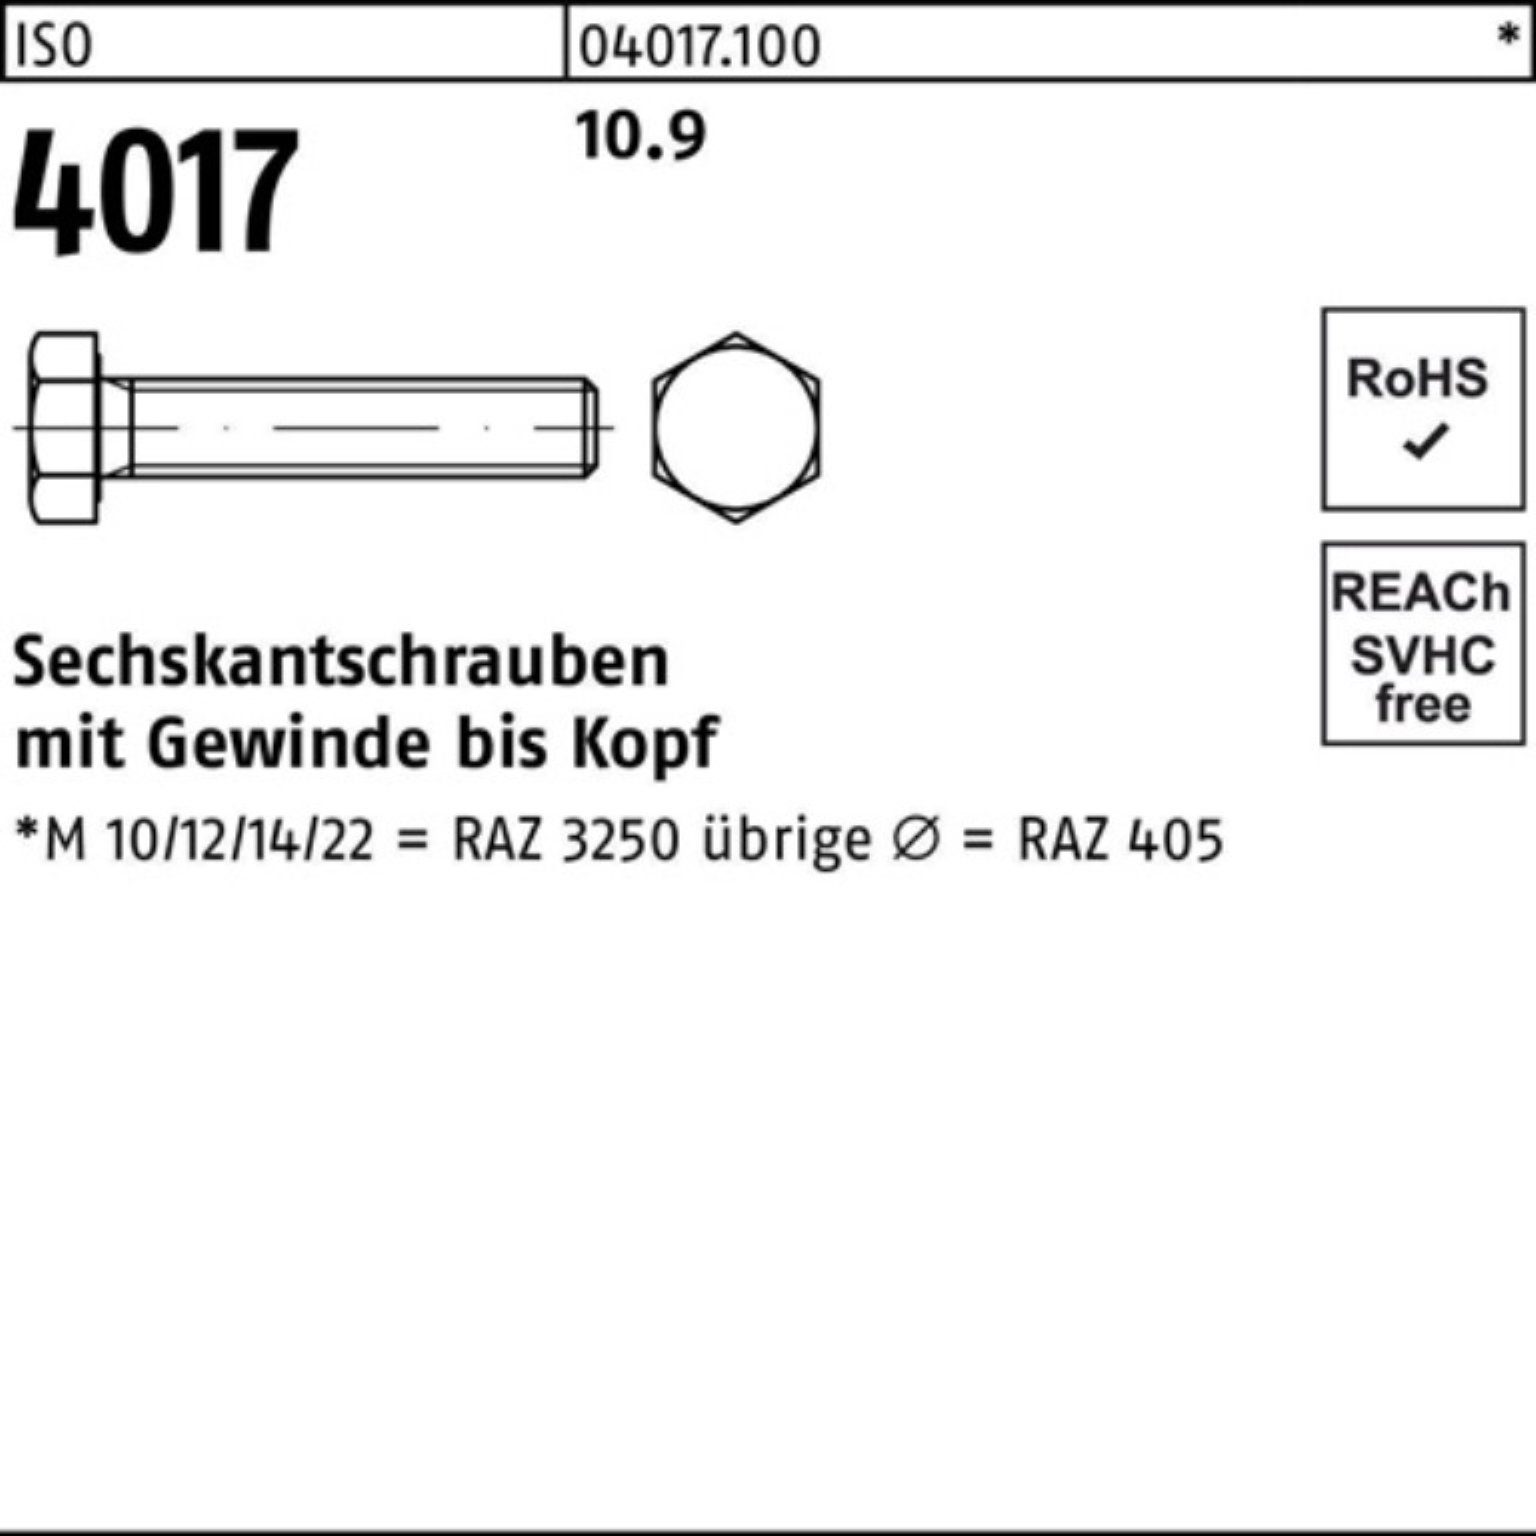 M16x ISO 40 Sechskantschraube Stück 50 45 Pack 4017 10.9 Sechskantschraube Bufab ISO VG 100er